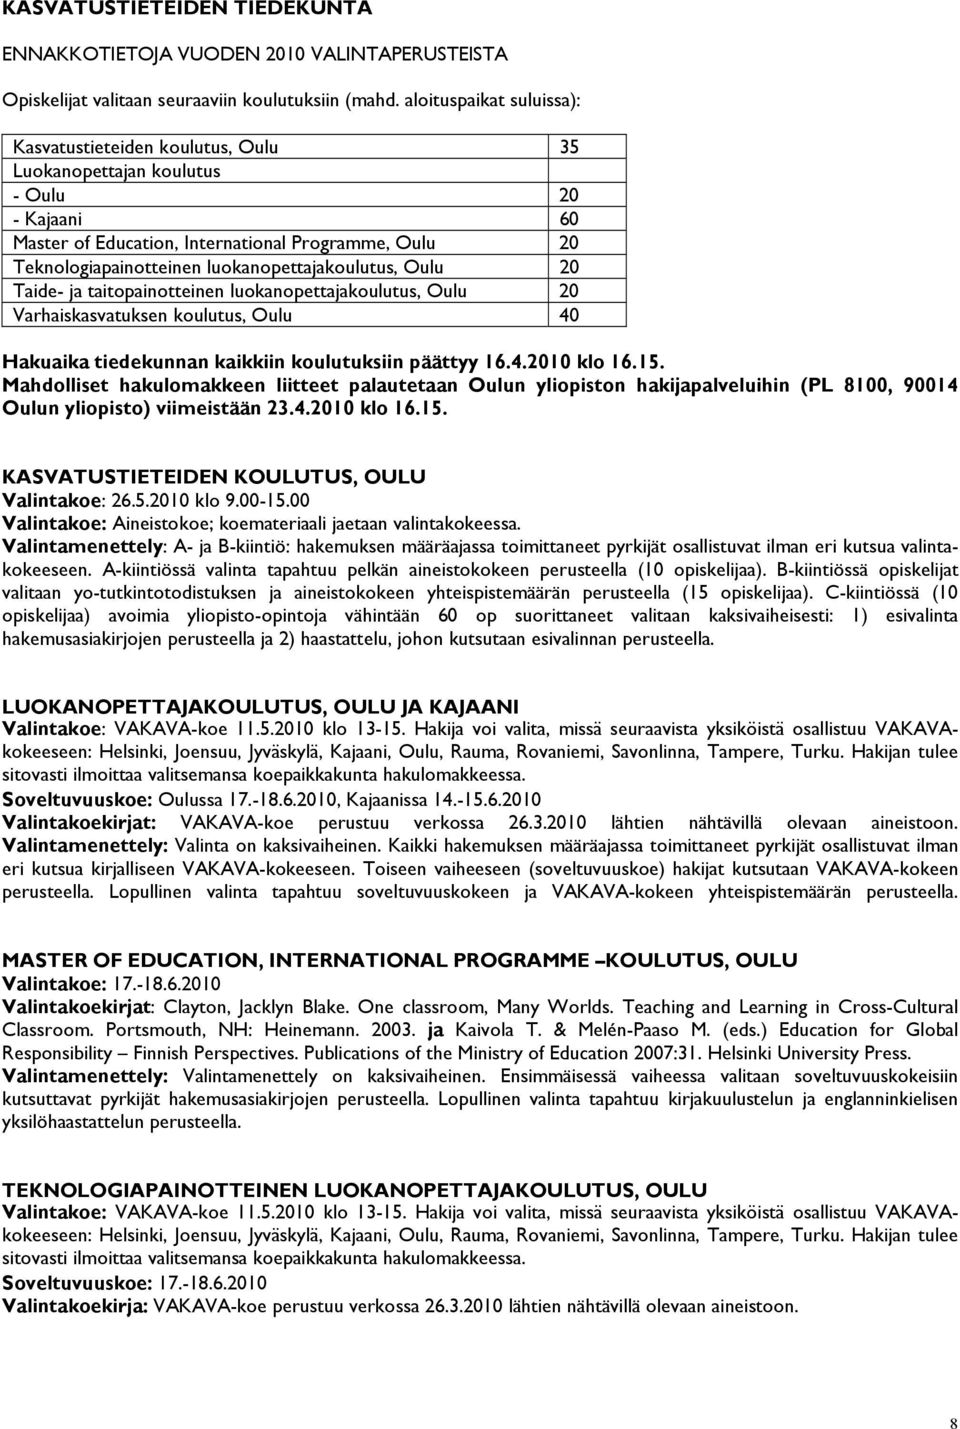 luokanopettajakoulutus, Oulu 20 Taide- ja taitopainotteinen luokanopettajakoulutus, Oulu 20 Varhaiskasvatuksen koulutus, Oulu 40 Hakuaika tiedekunnan kaikkiin koulutuksiin päättyy 16.4.2010 klo 16.15.